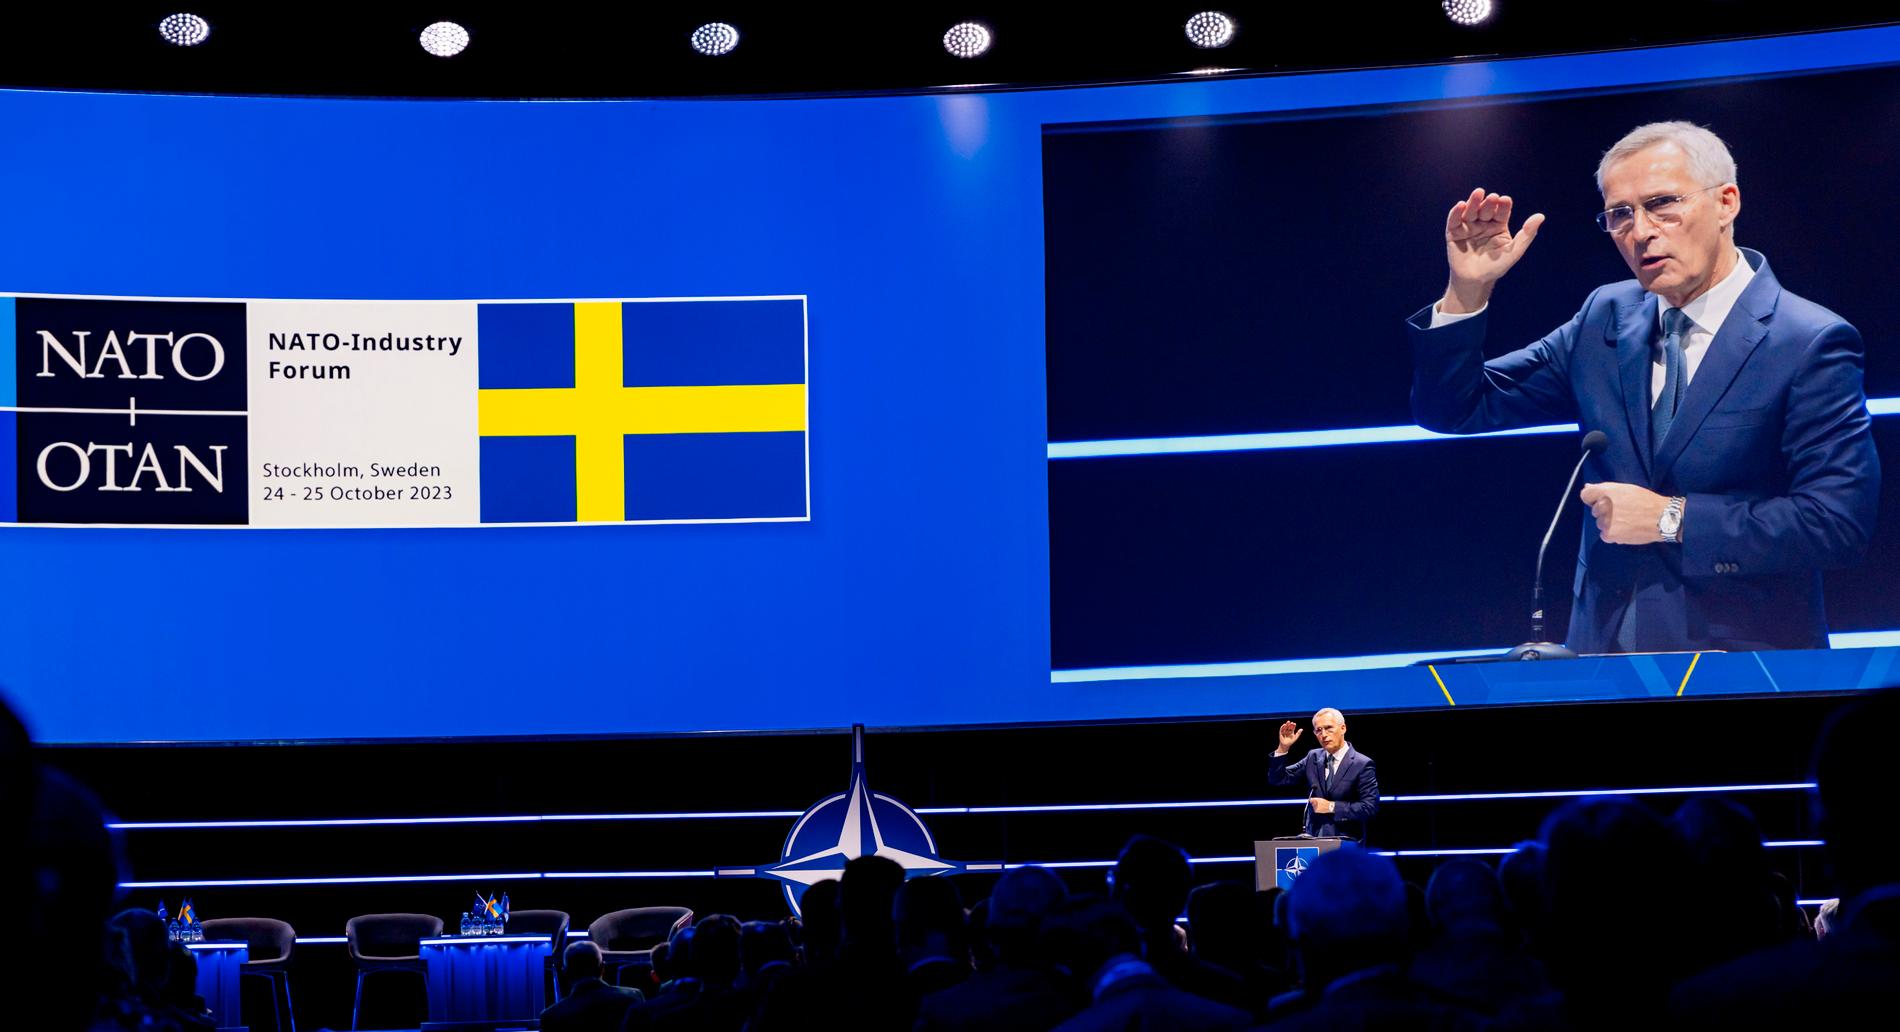 Generalsekreterare Stoltenberg har varit positiv till Sverige i Nato och menar att Sverige har uppfyllt sina skyldigheter för att få bli medlem. 